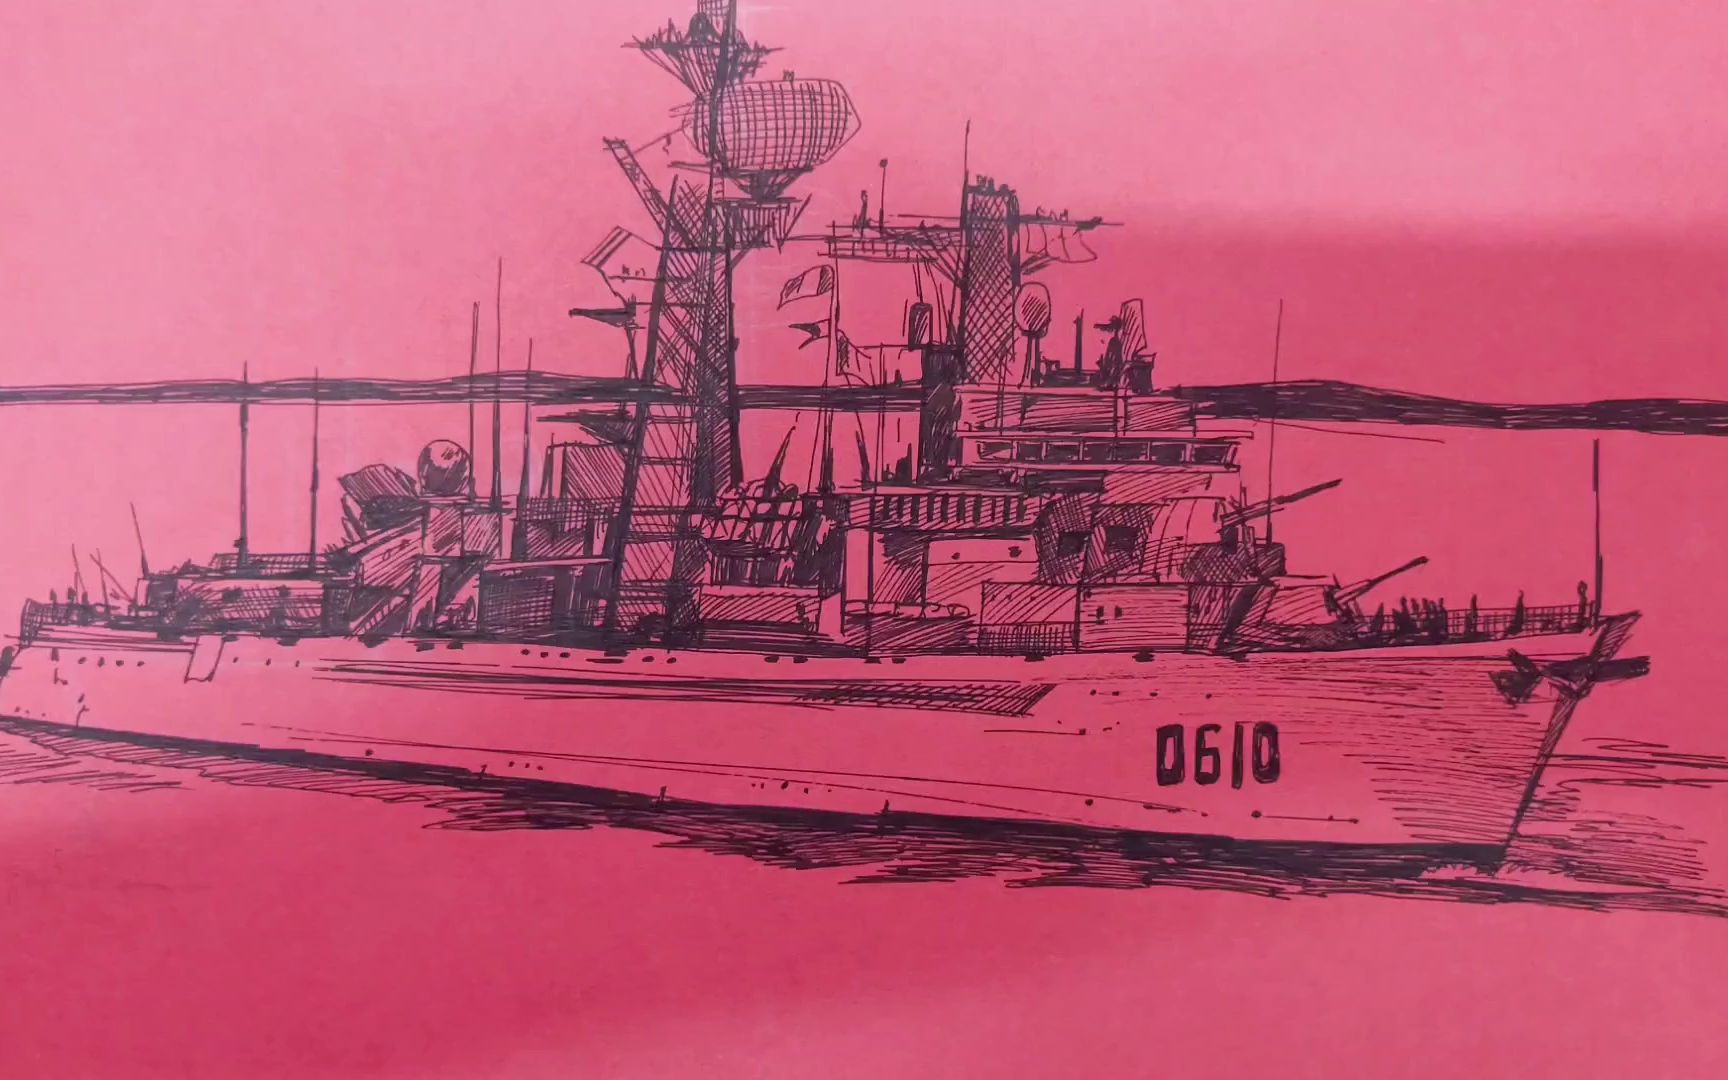 驱逐舰 手绘图片